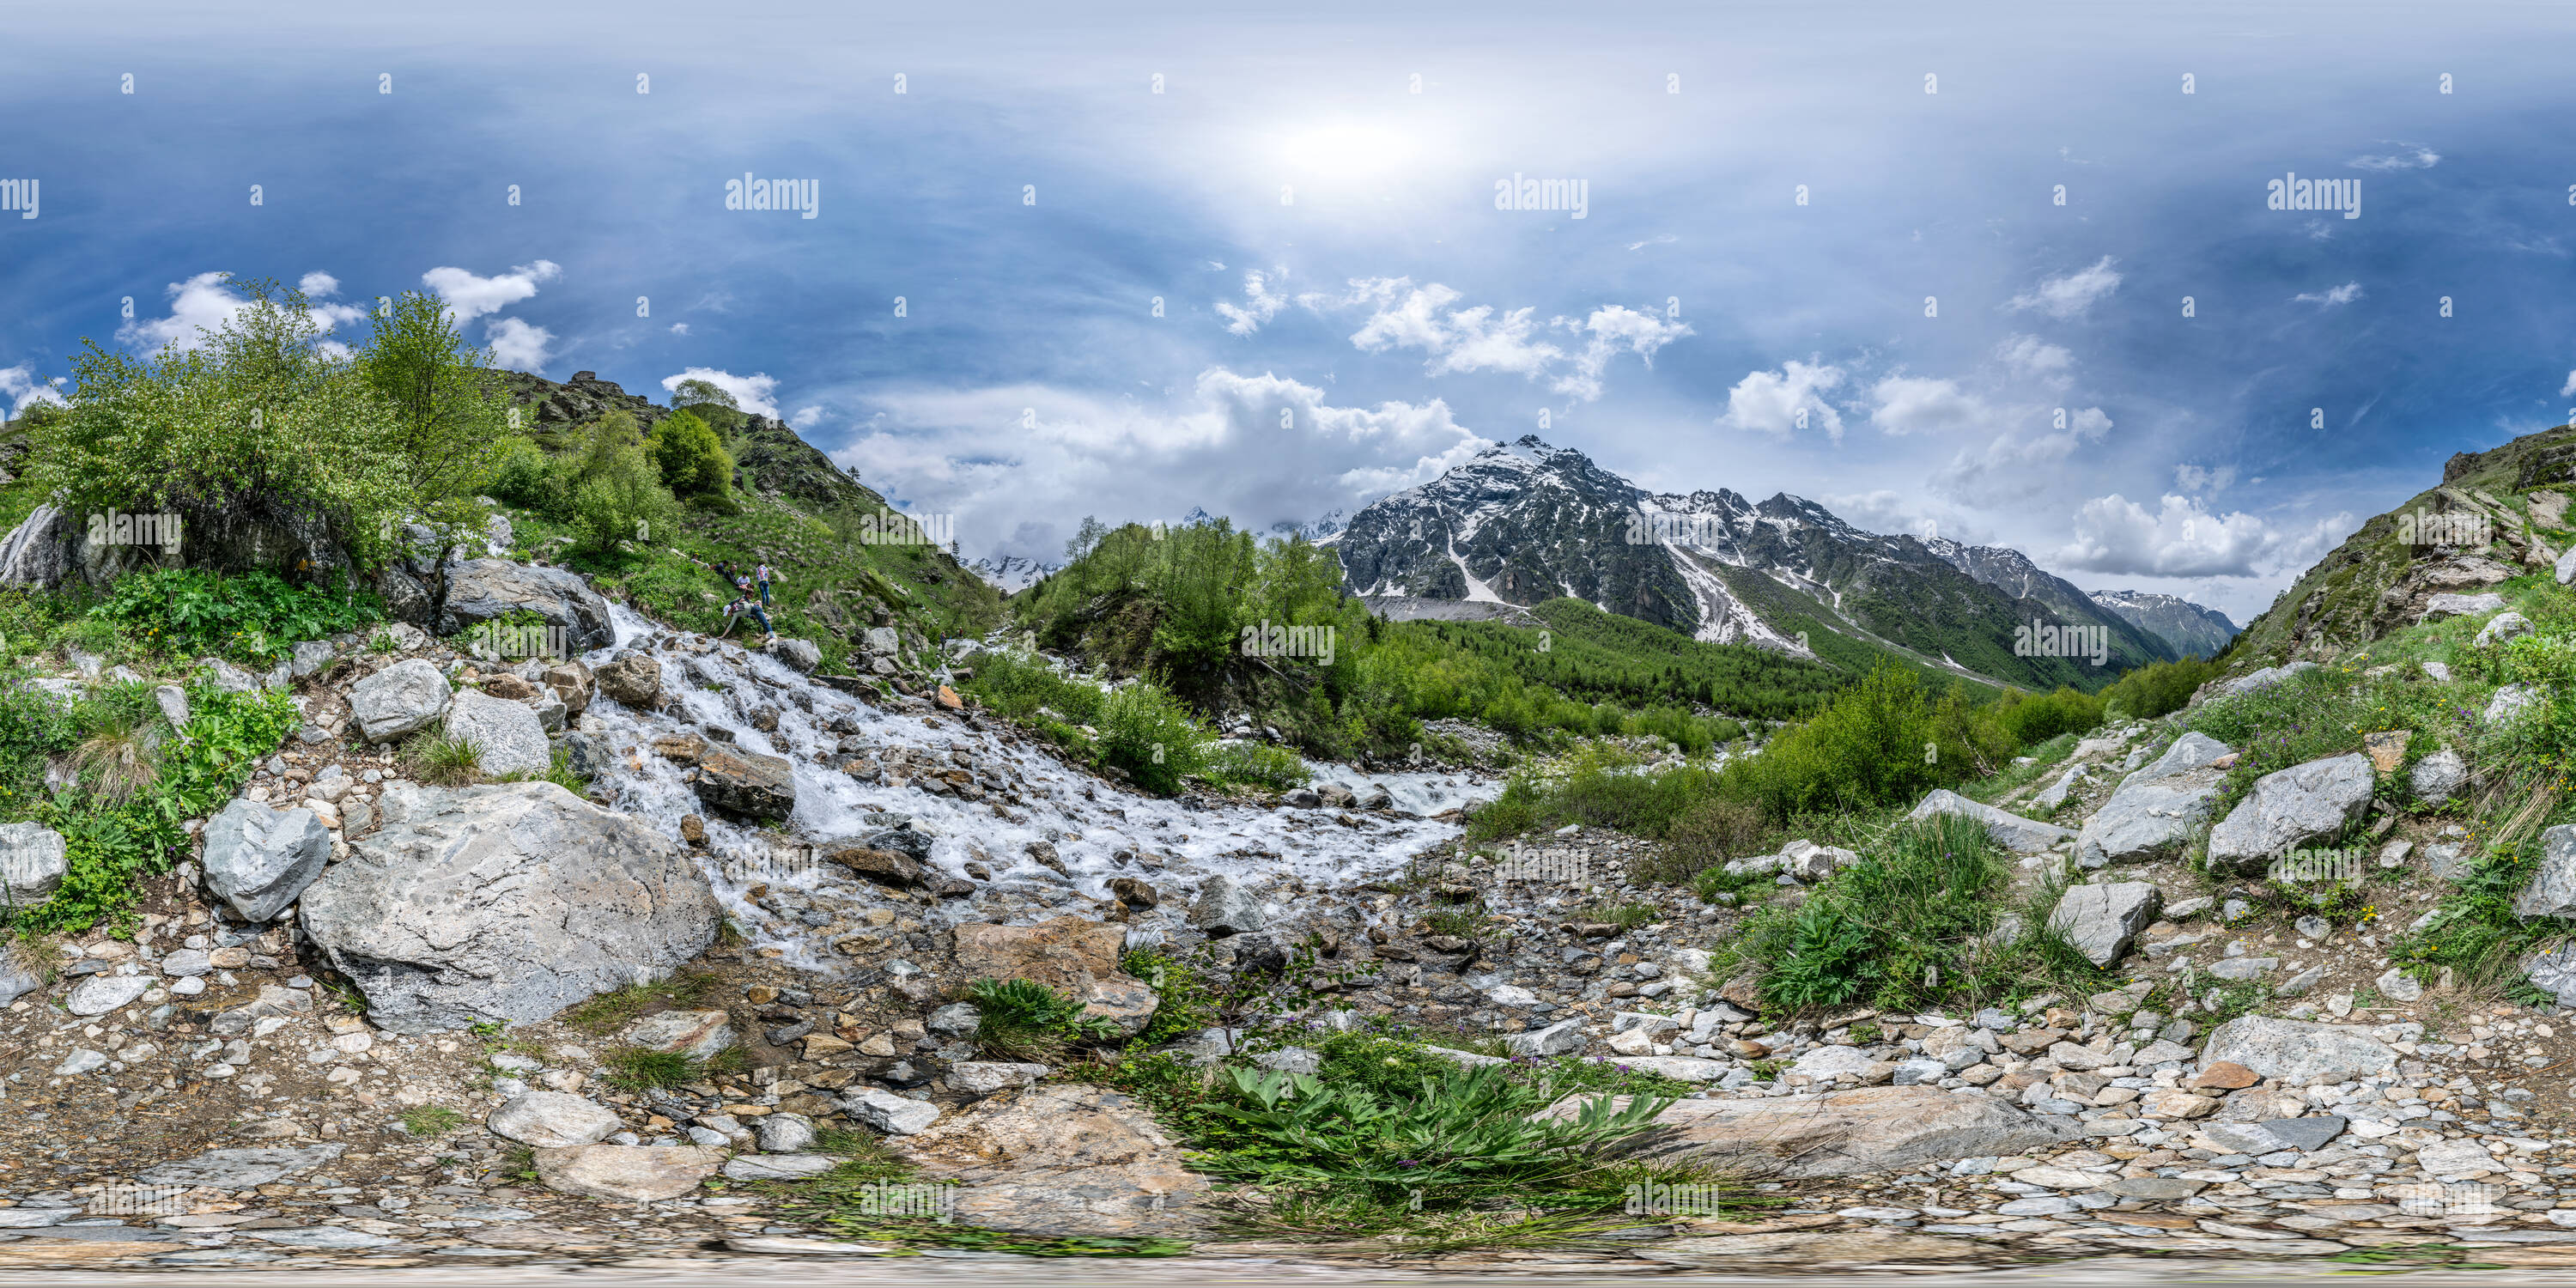 Vue panoramique à 360° de Par le flux (Panorama 310 2015/06/14)